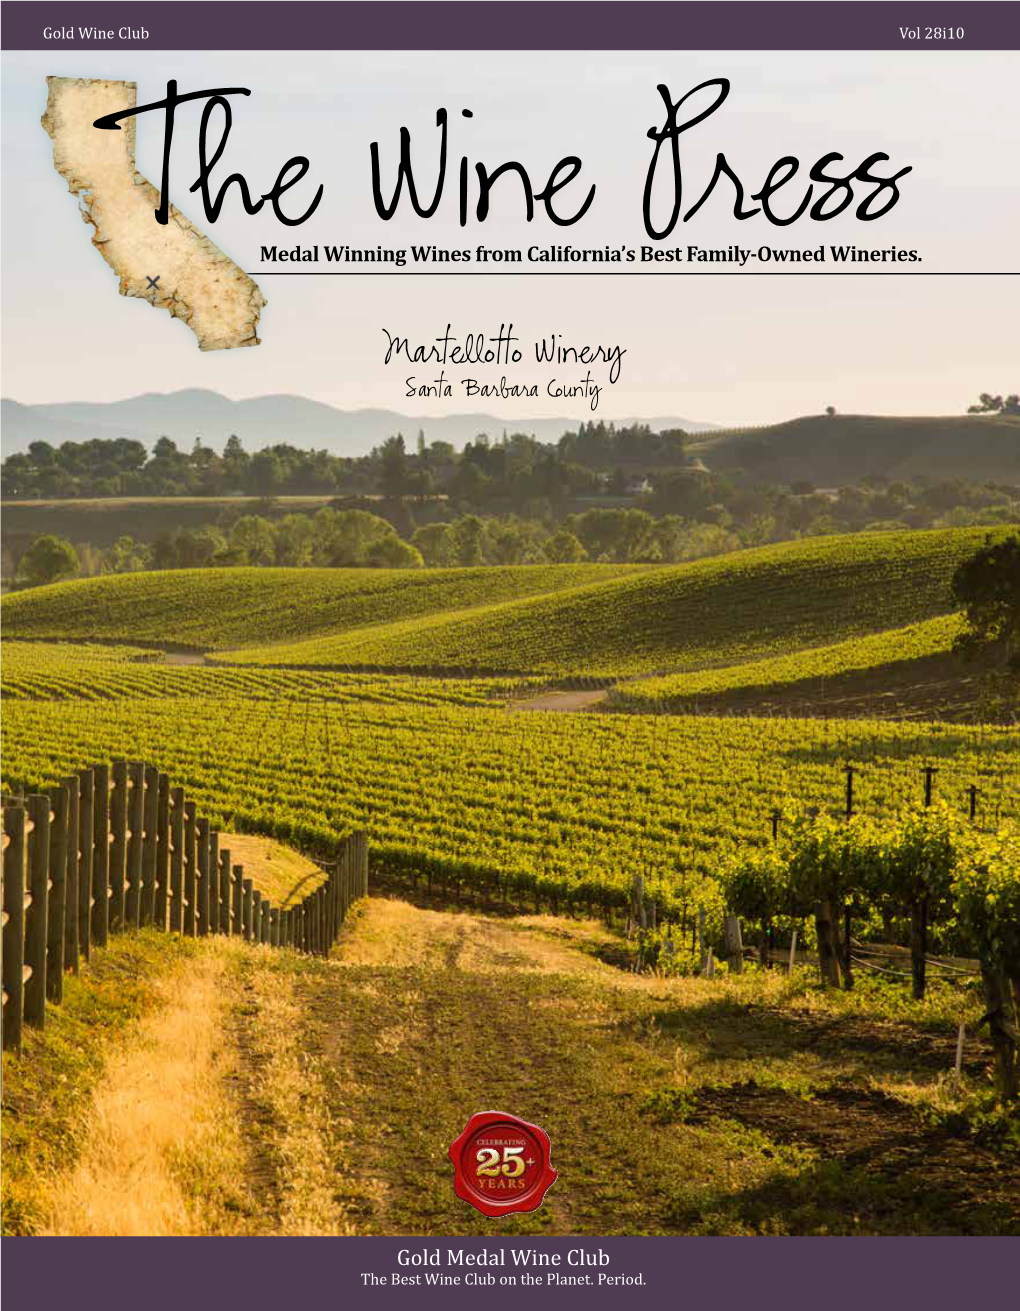 Martellotto Winery Santa Barbara County